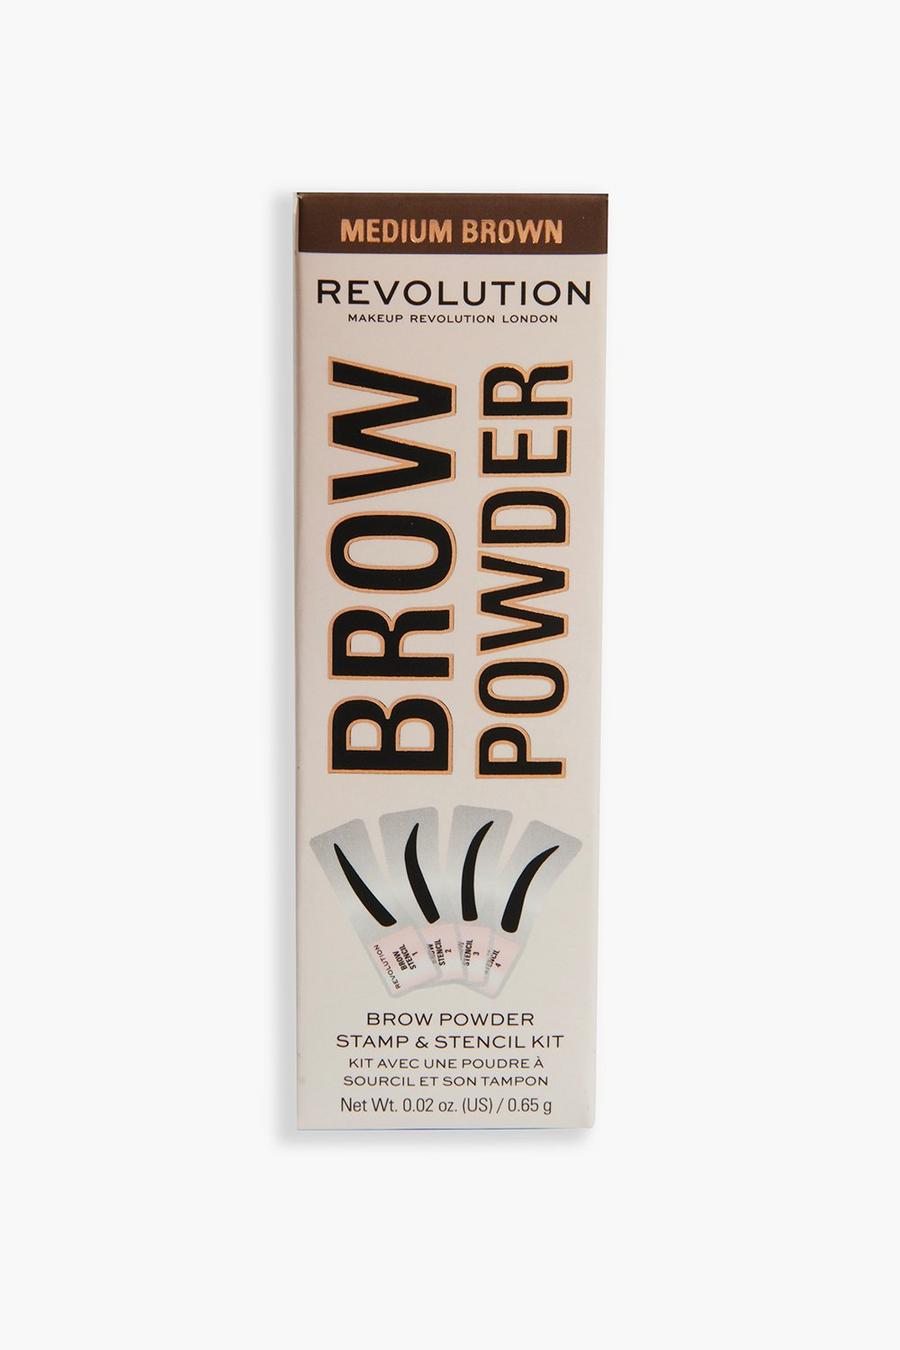 Medium brown Revolution Brow Powder Stamp & Stencil Kit 